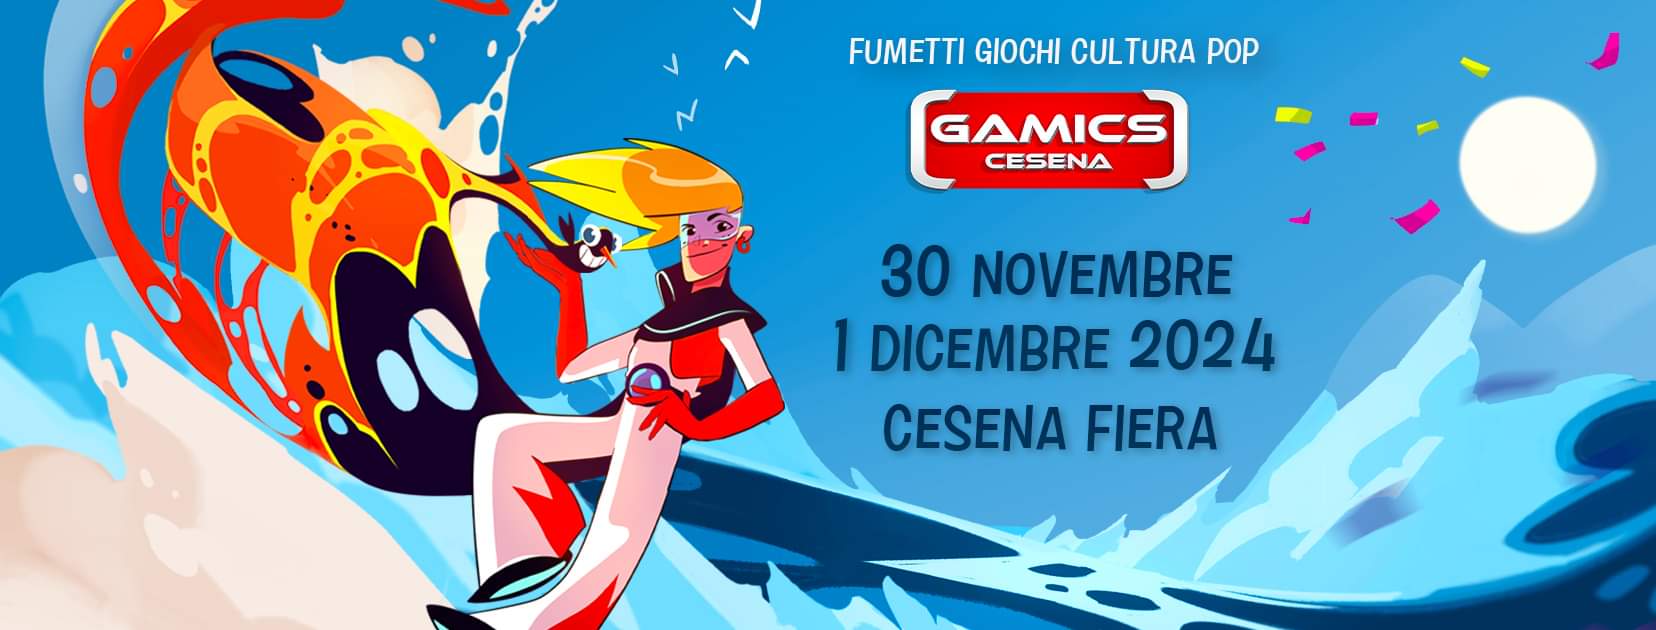 Gamics Cesena: dal 30 novembre al 1 dicembre 2024